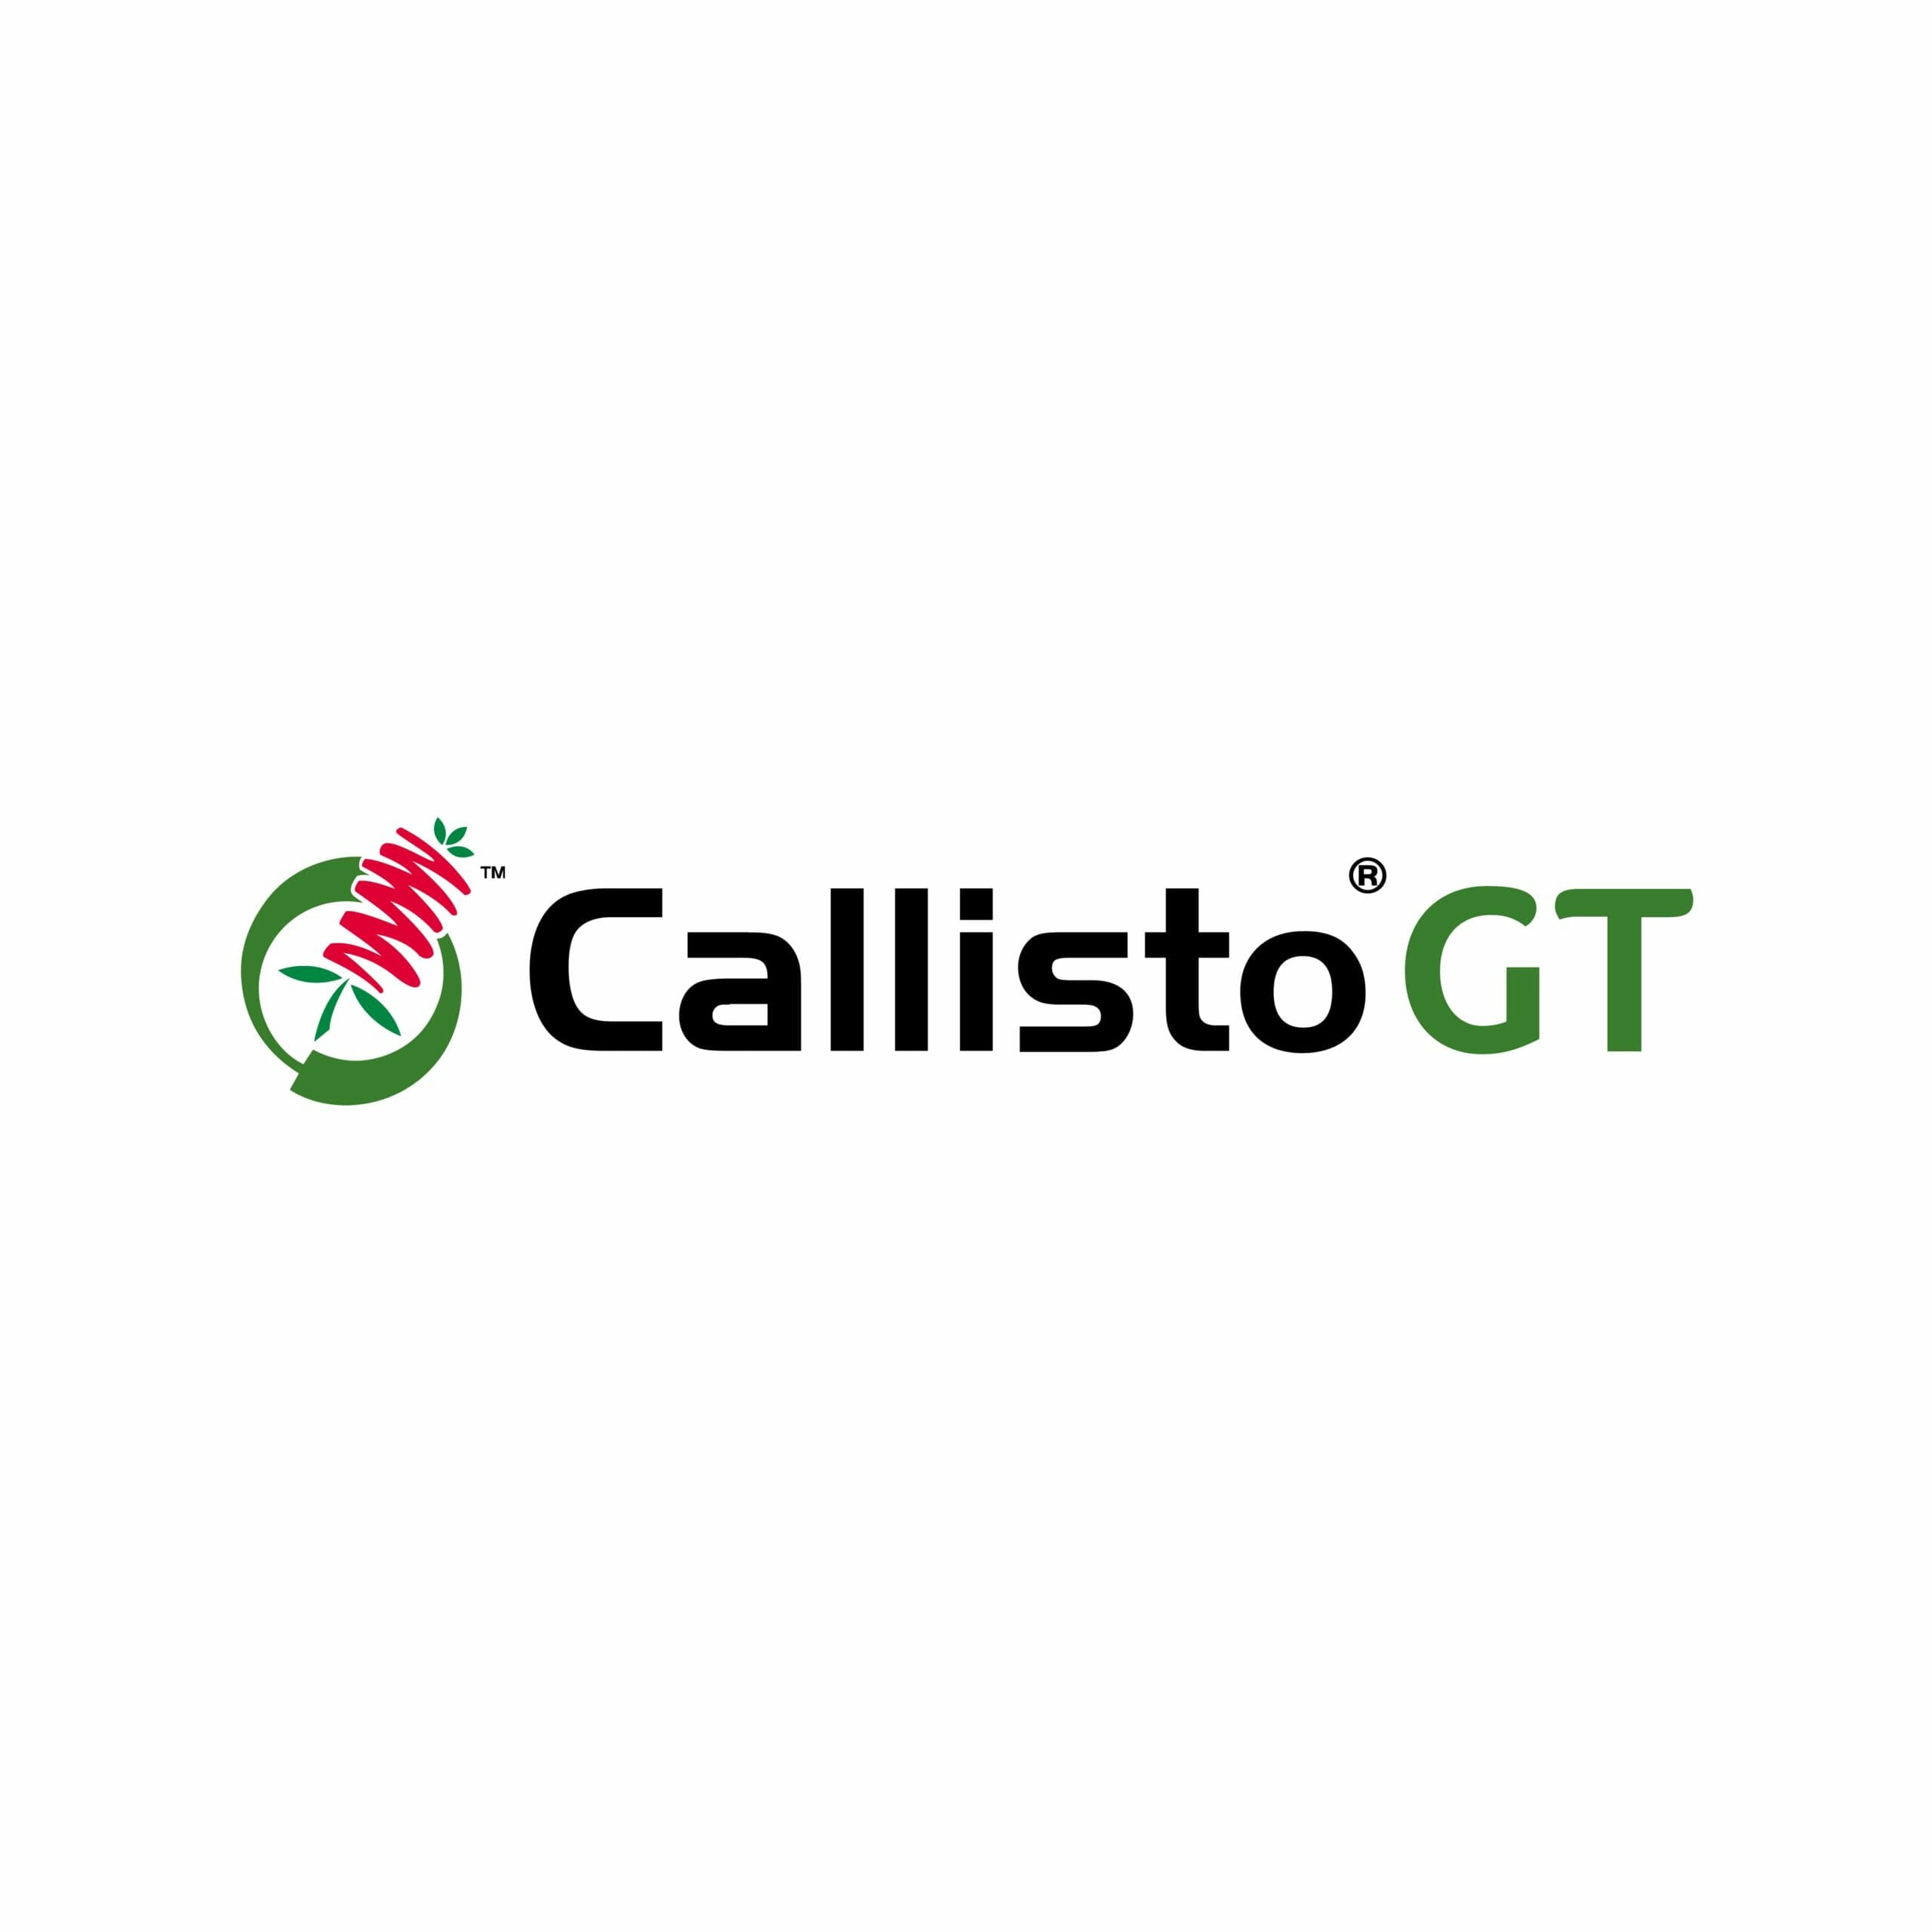 Callisto GT